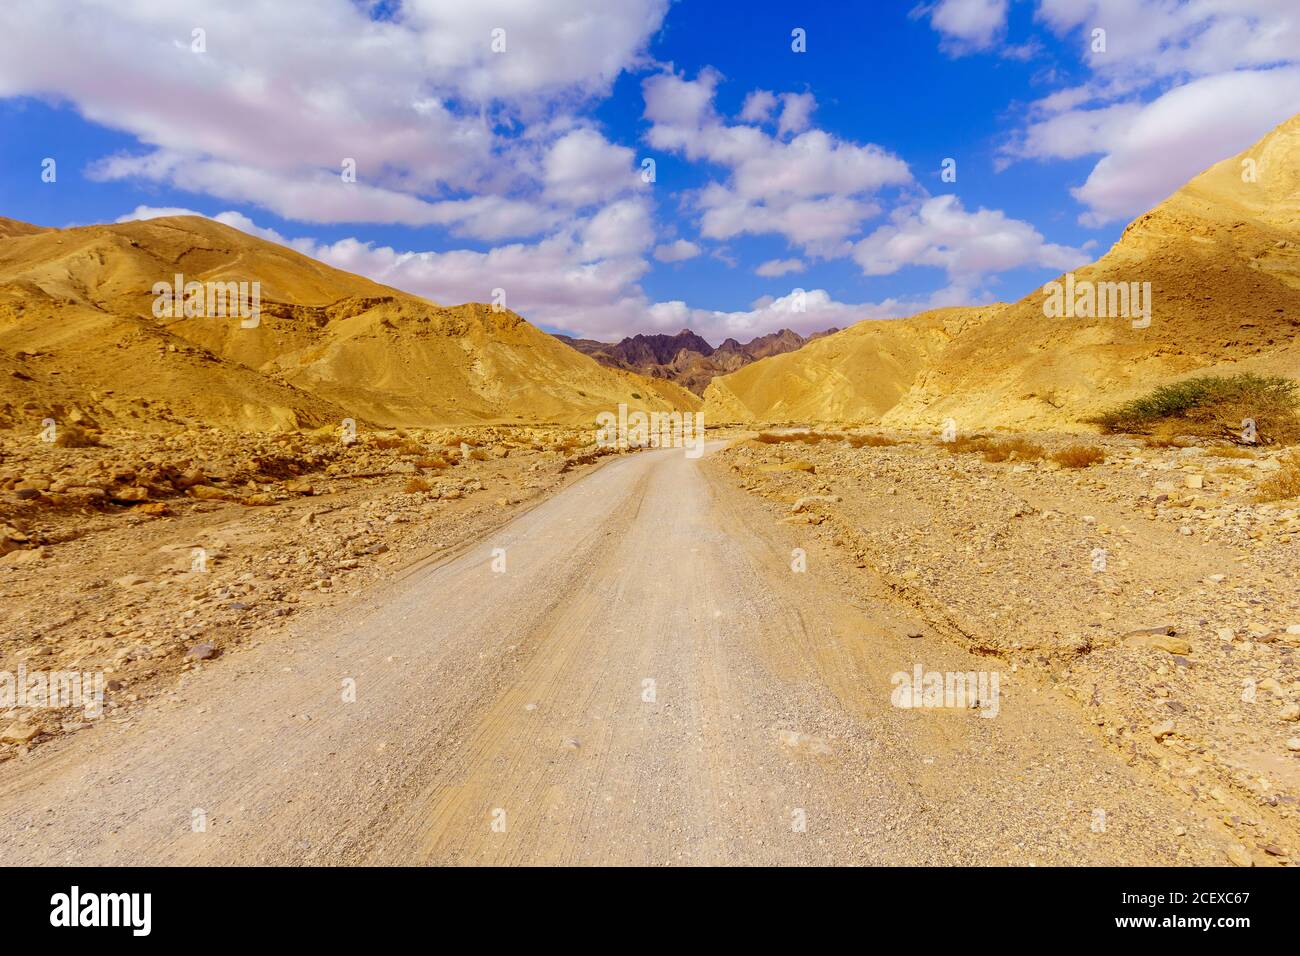 Vista di Nahal Amram (valle del deserto) e del paesaggio desertico di Arava, Israele meridionale Foto Stock